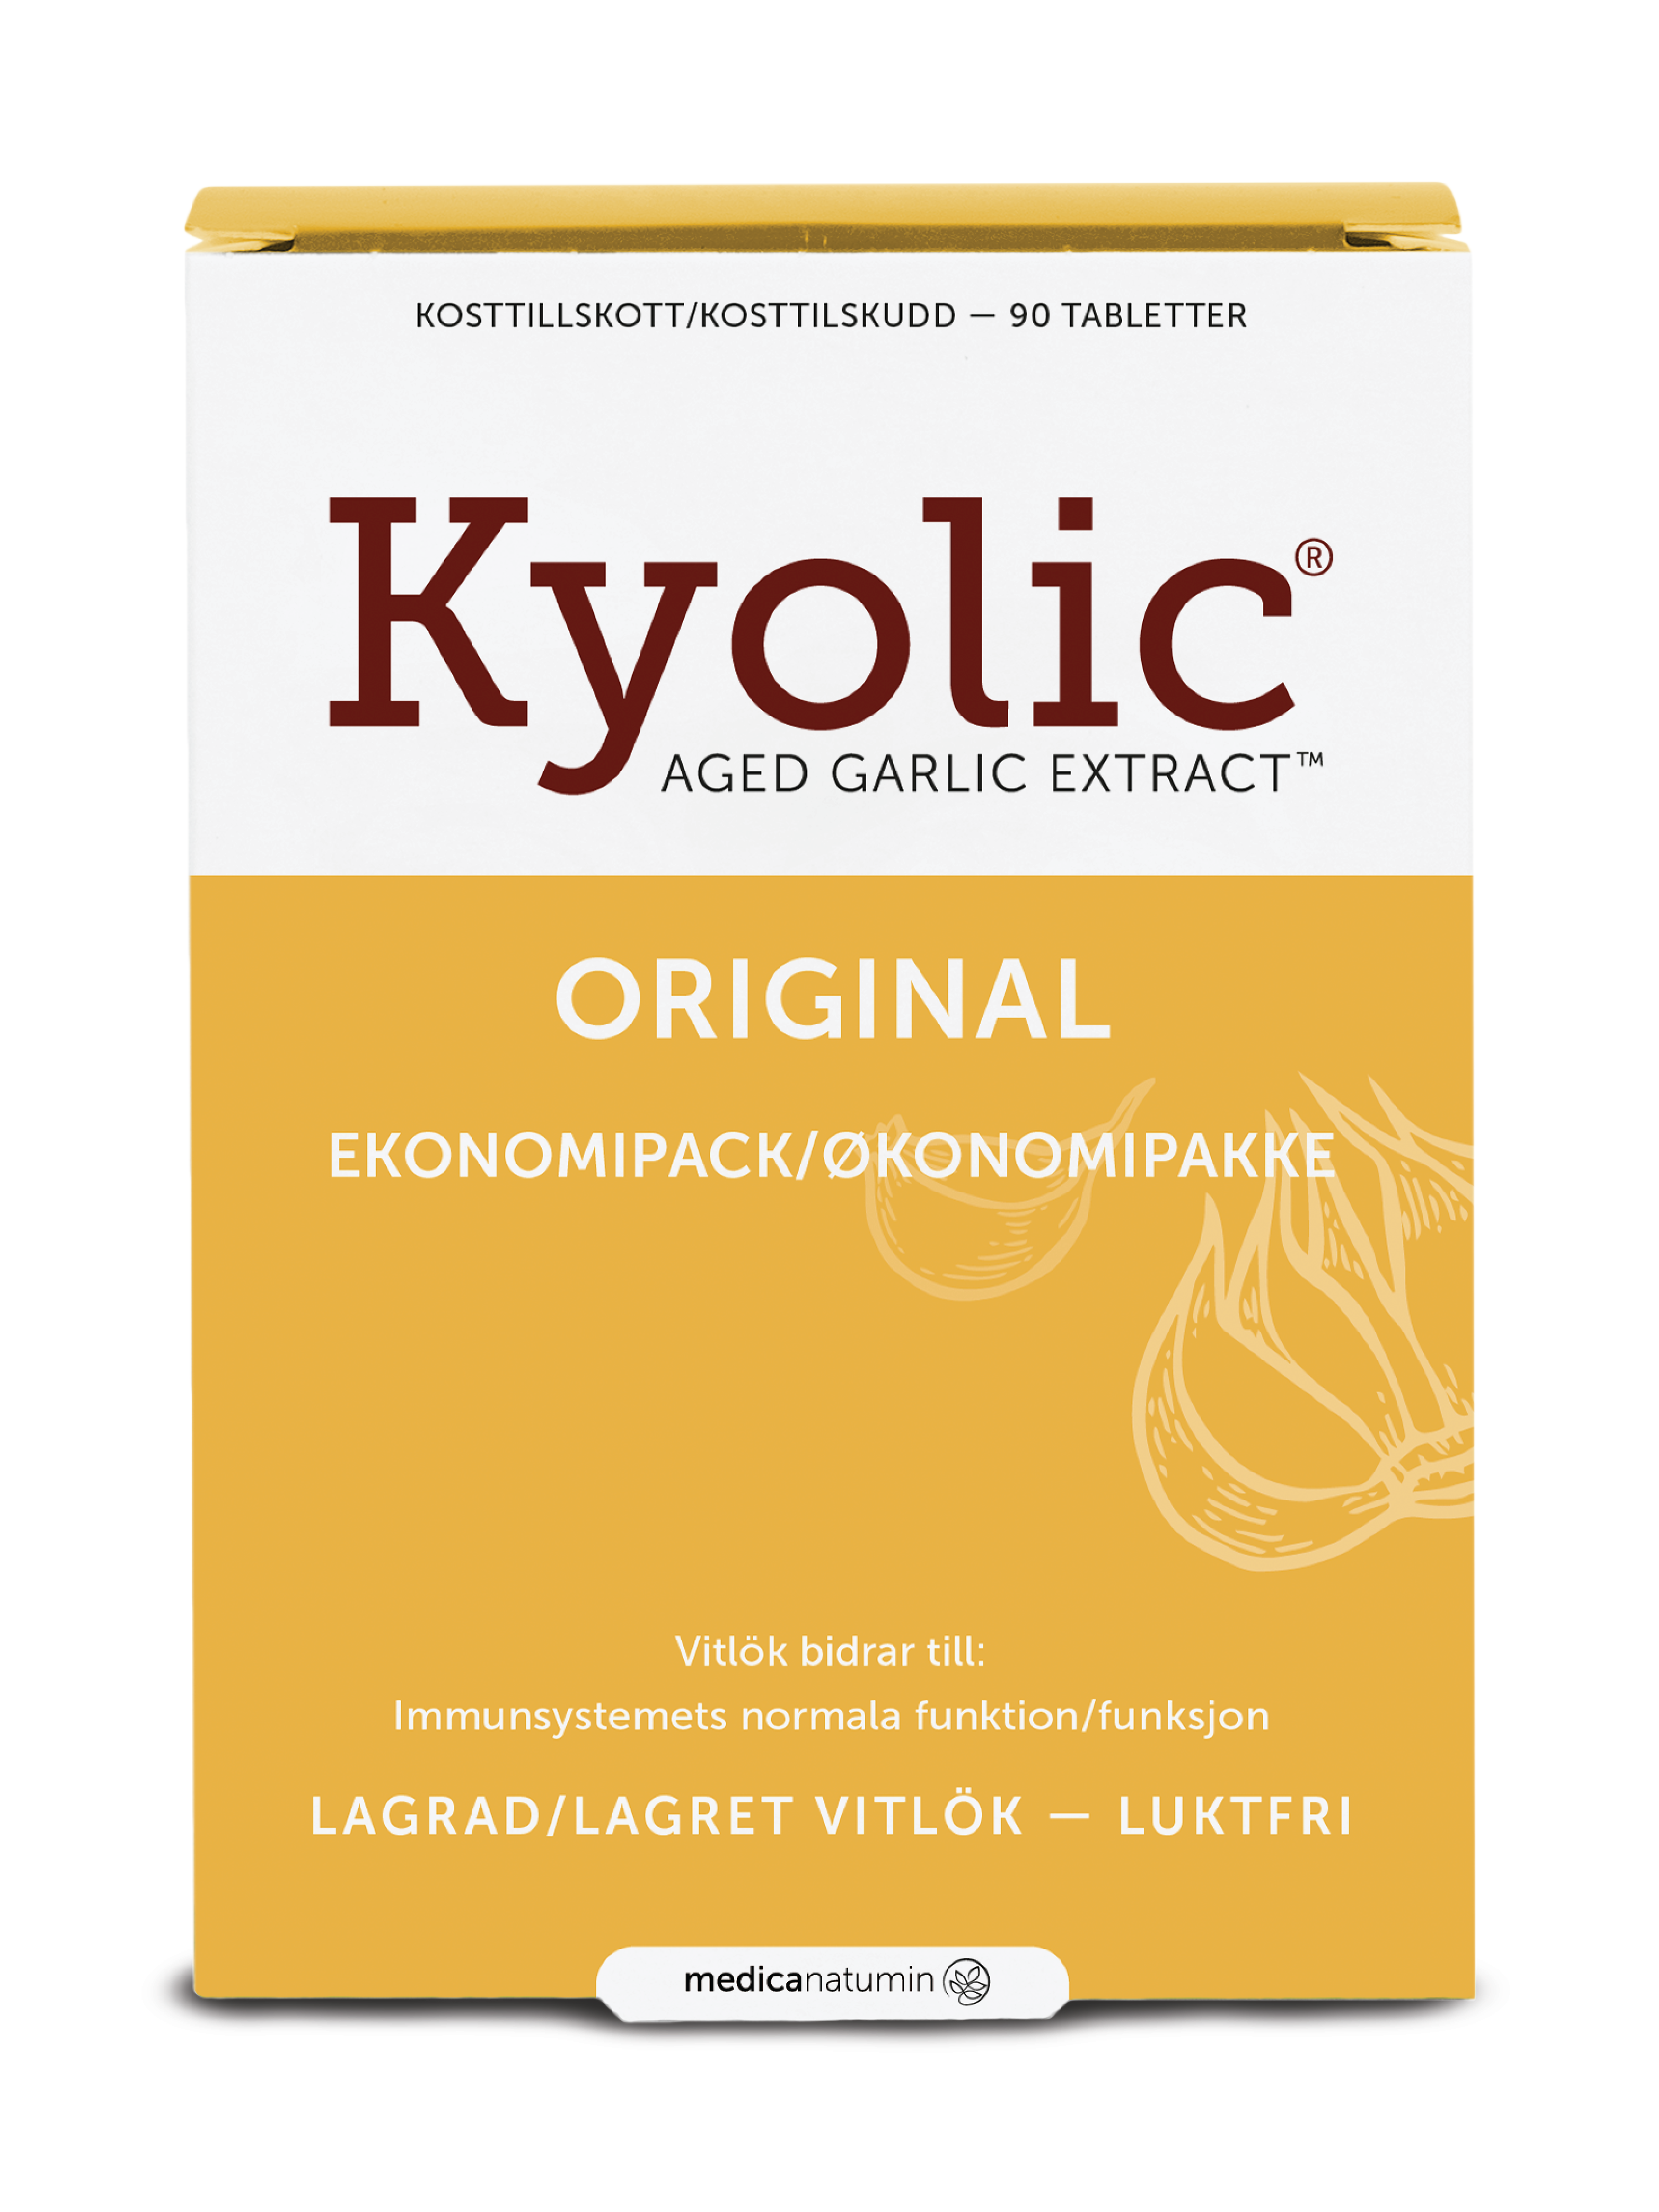 Kyolic Aged Garlic Extract Original Hvitløkekstrakt tabletter, 90 stk.